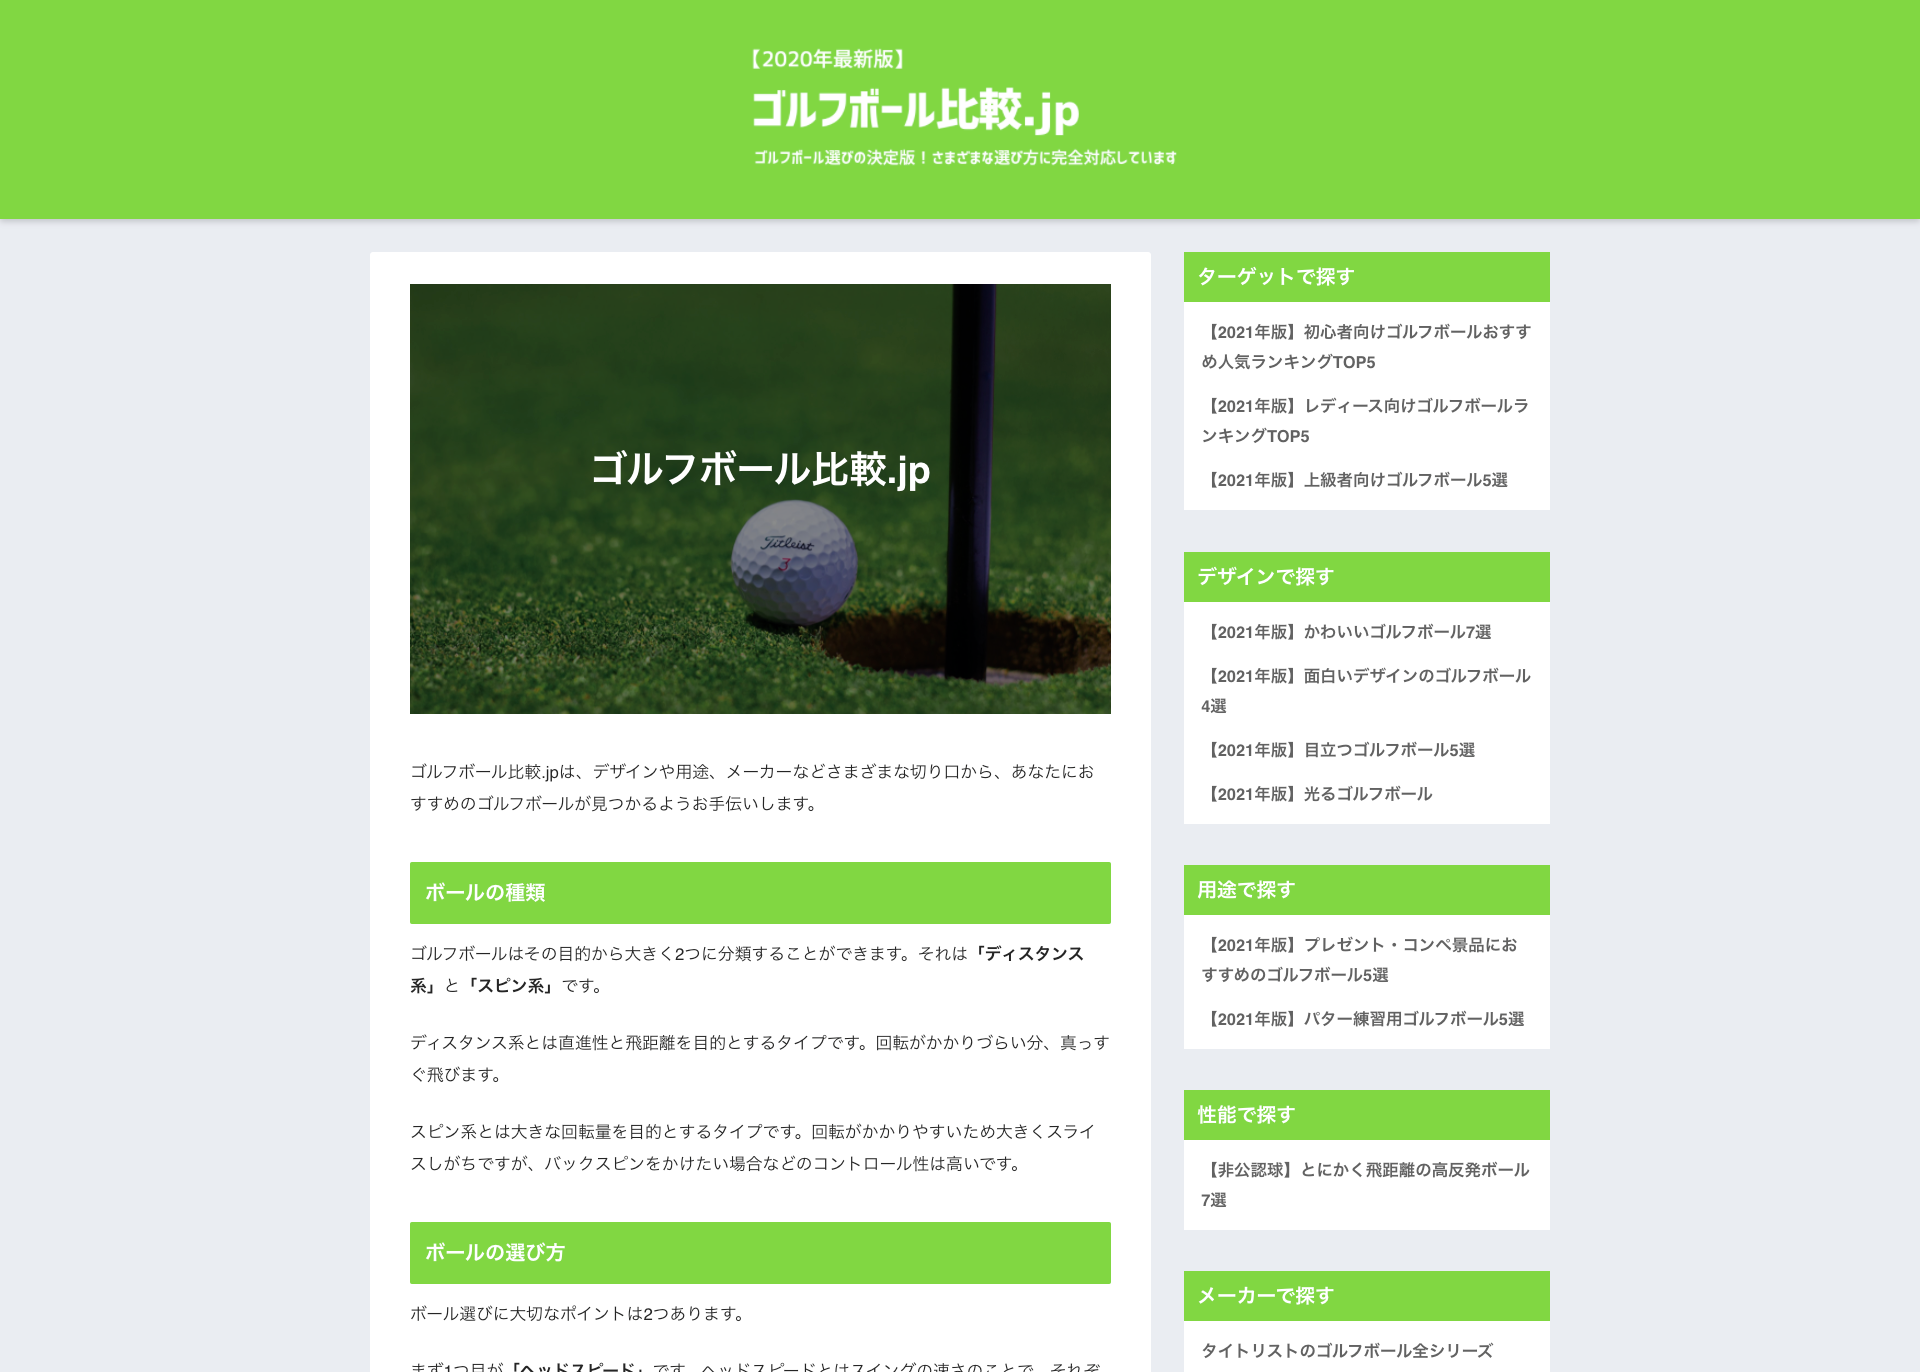 ゴルフボール選びをサポートするウェブメディア ゴルフボール比較 Jp をリリース 株式会社クラブルのプレスリリース